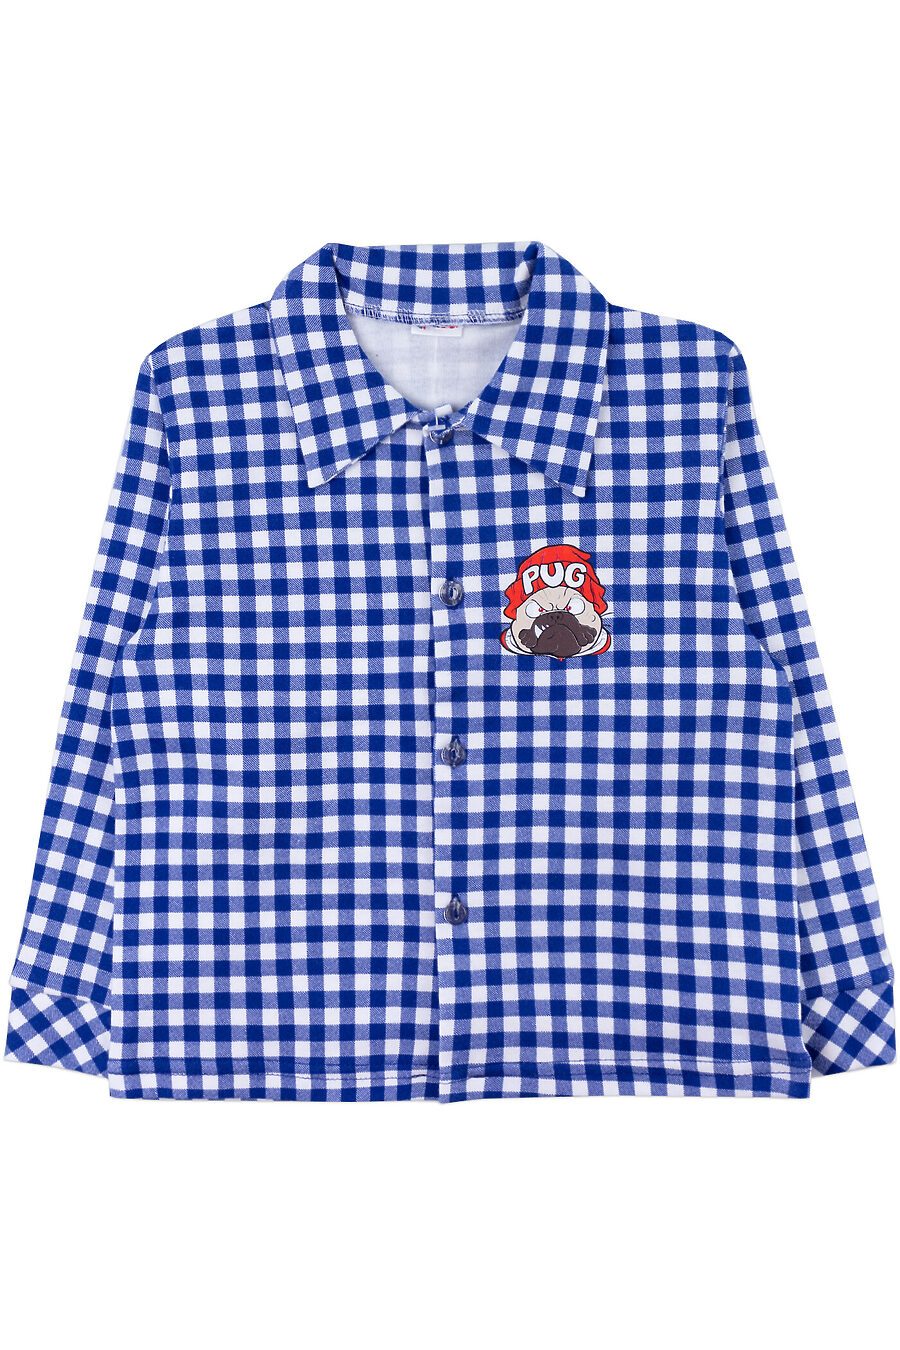 Рубашка YOULALA (822456), купить в Moyo.moda